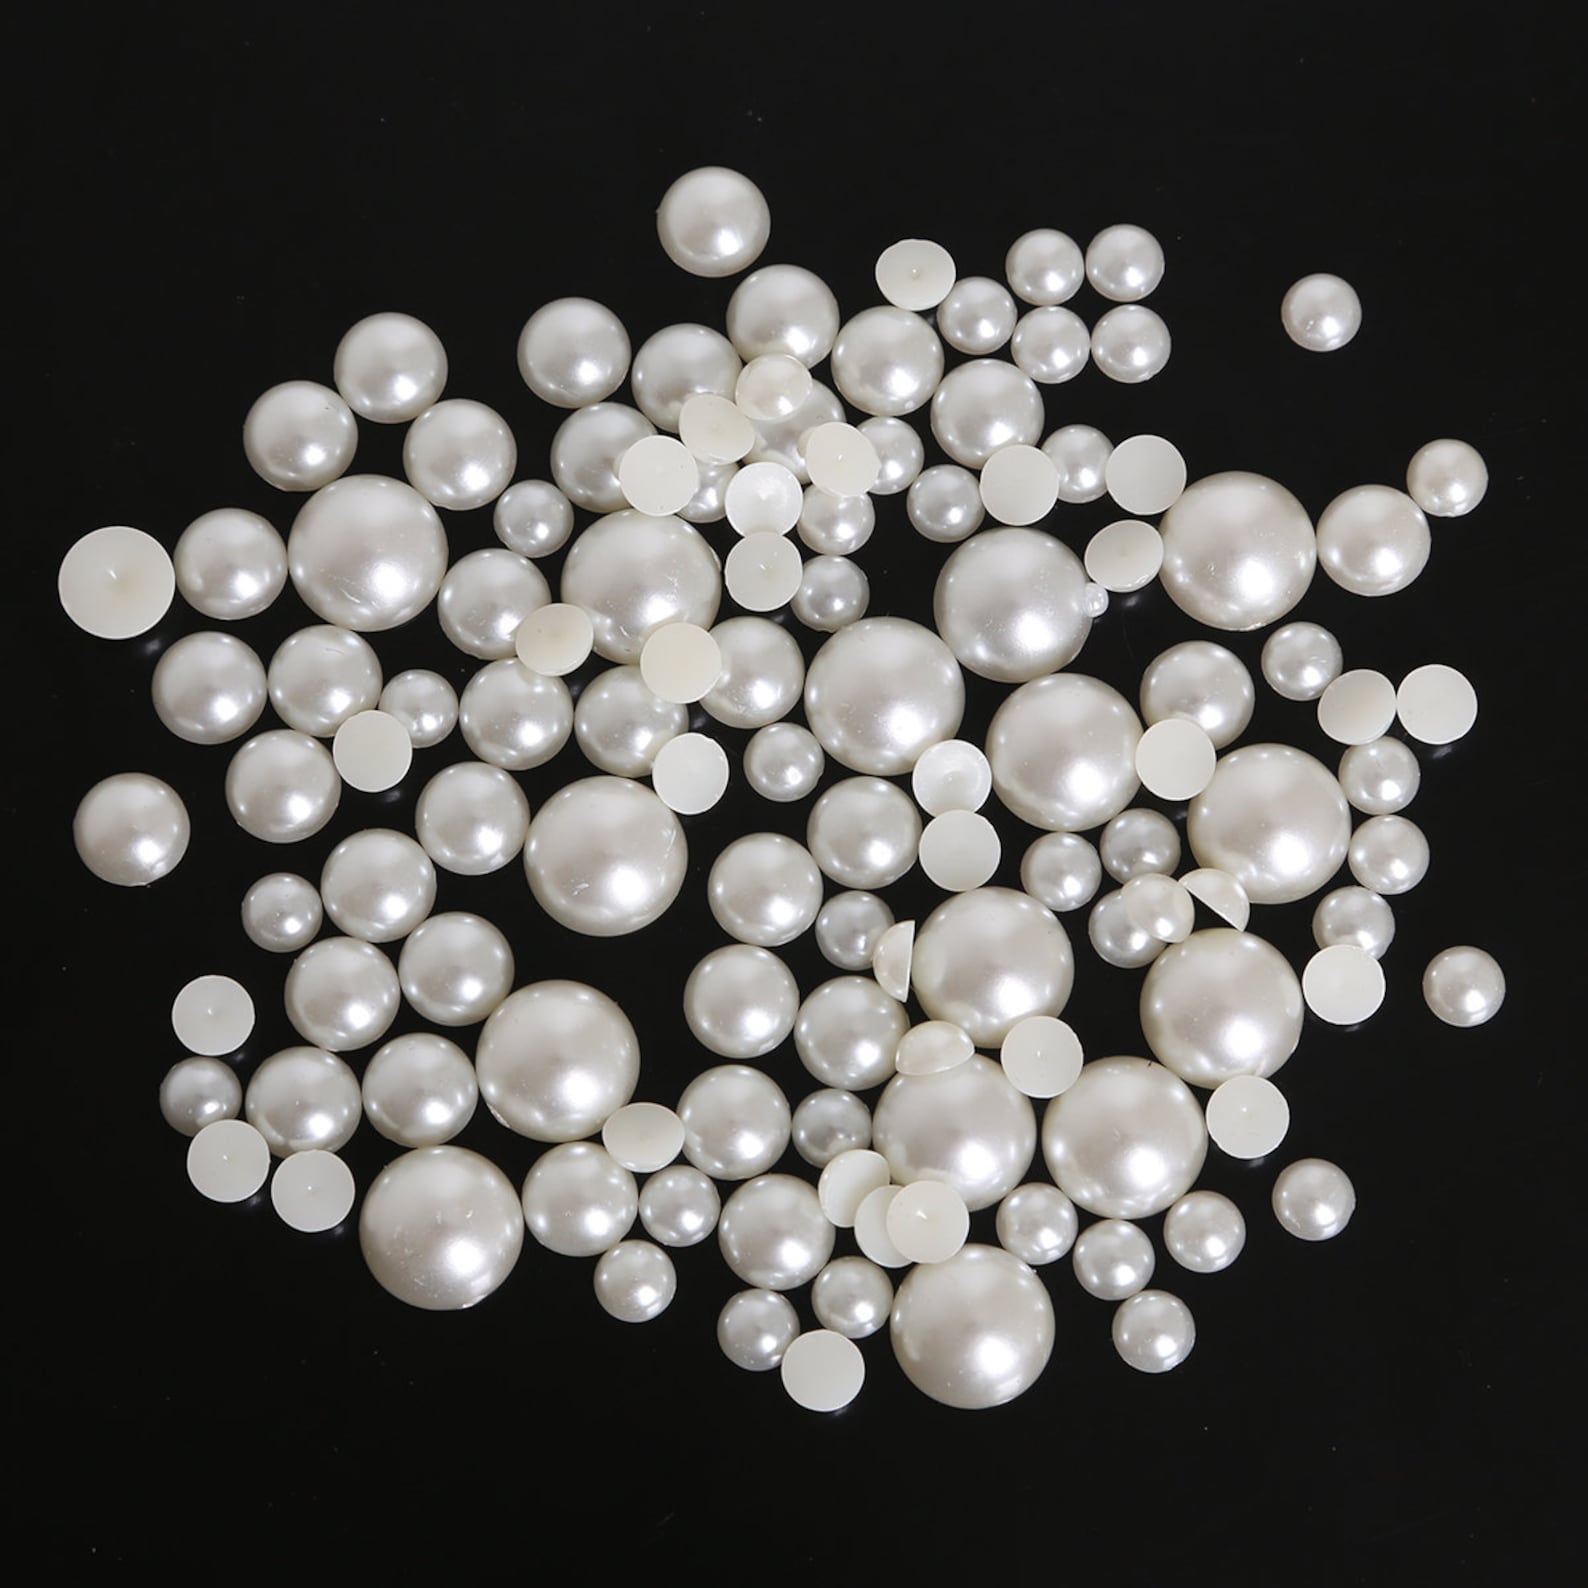 12 SIZES Ivory Flatback Half Round Pearls for Embellishments - Etsy